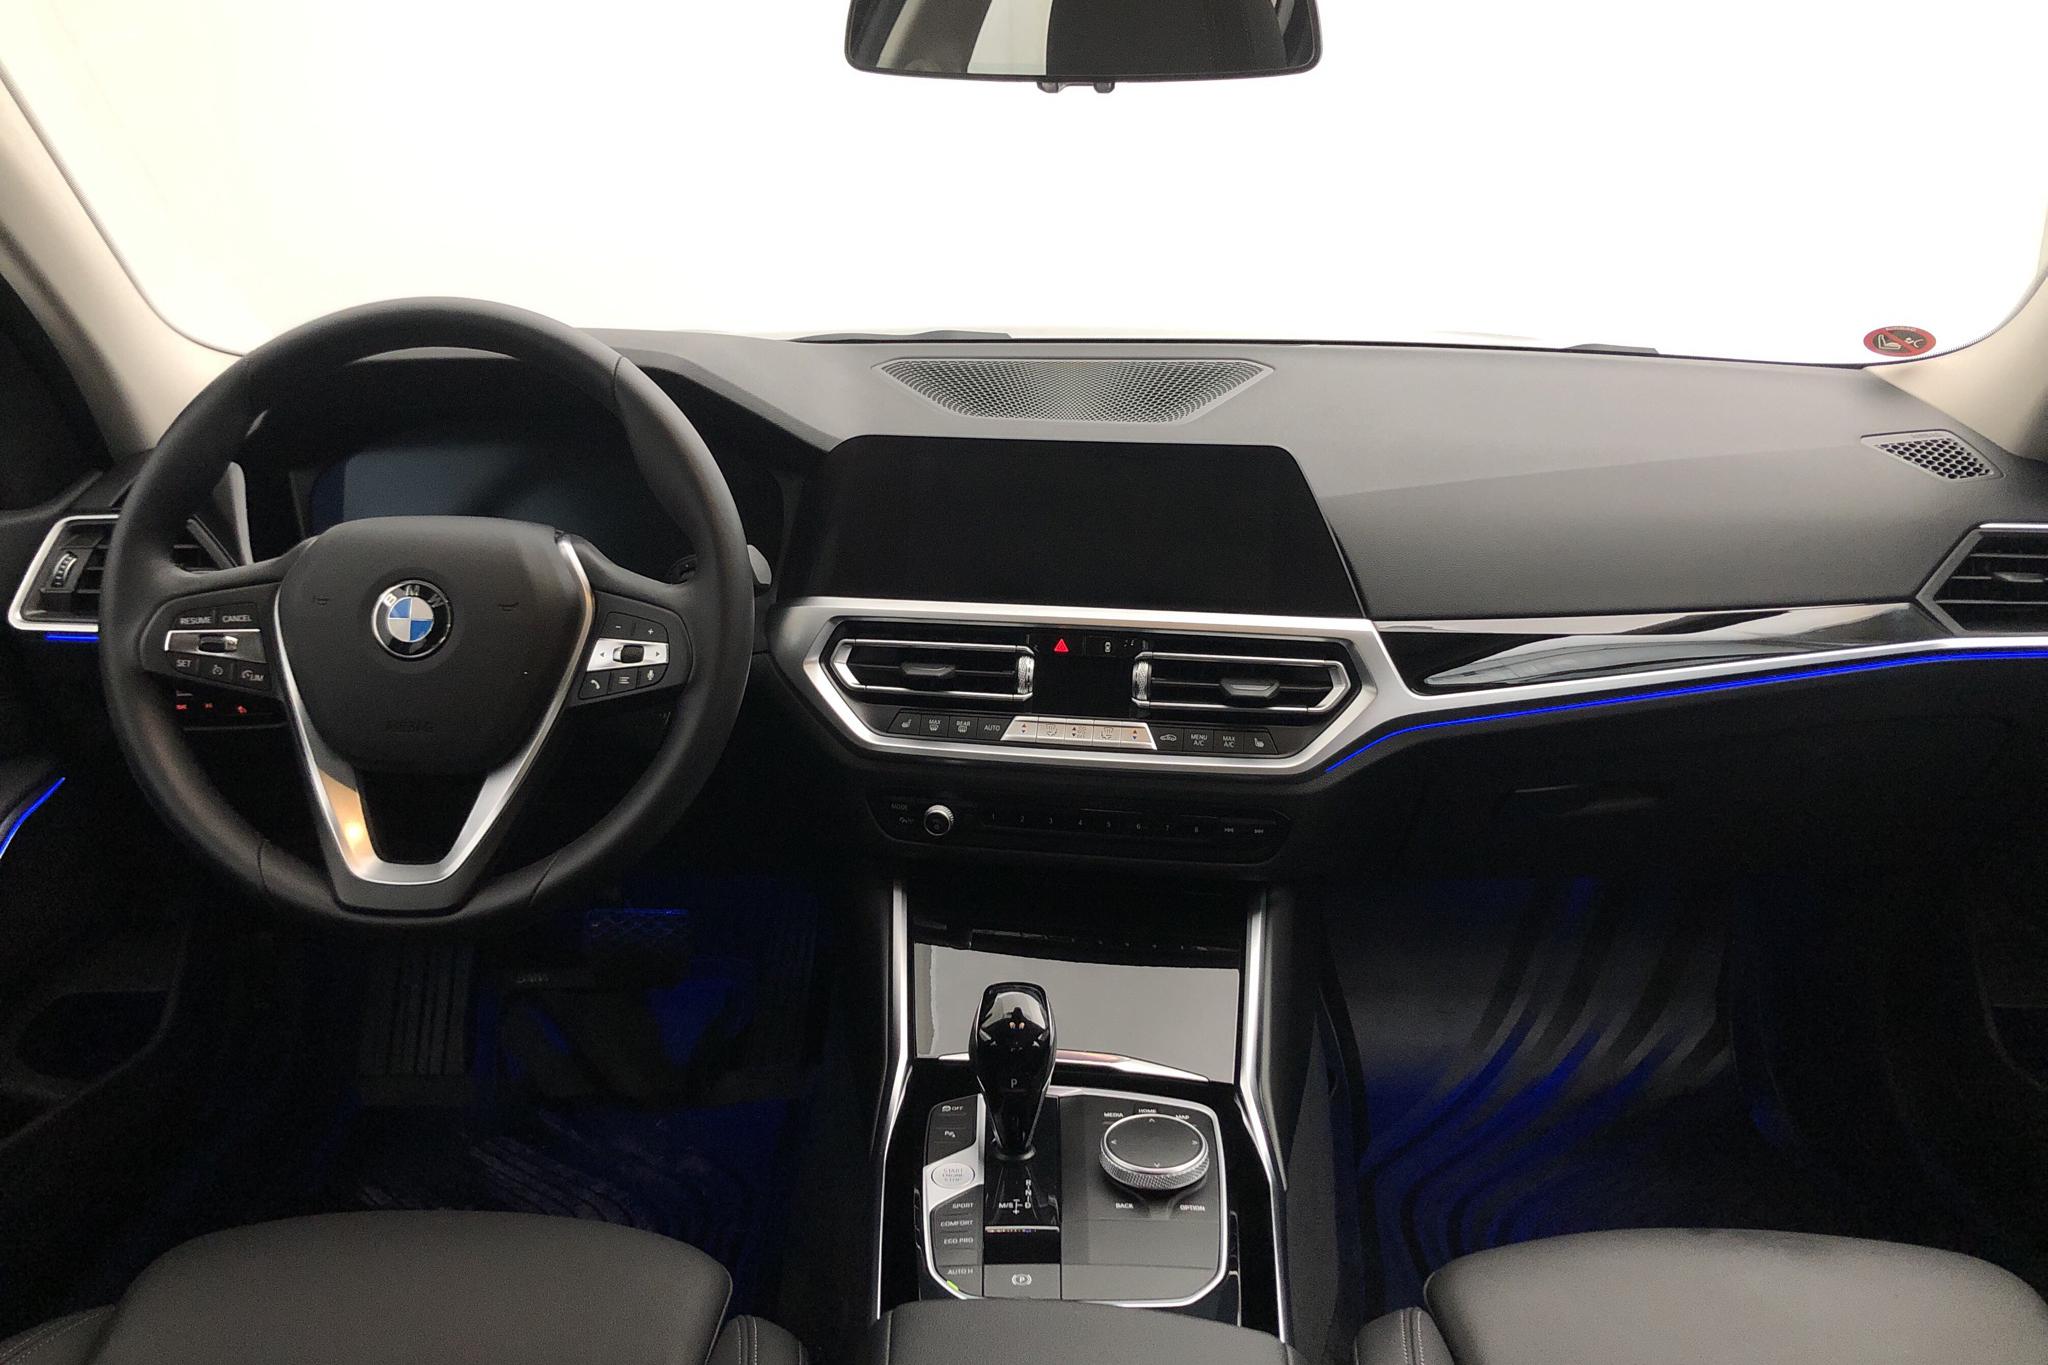 BMW 320d xDrive Sedan, G20 (190hk+11hk) - 1 300 km - Automatic - black - 2022